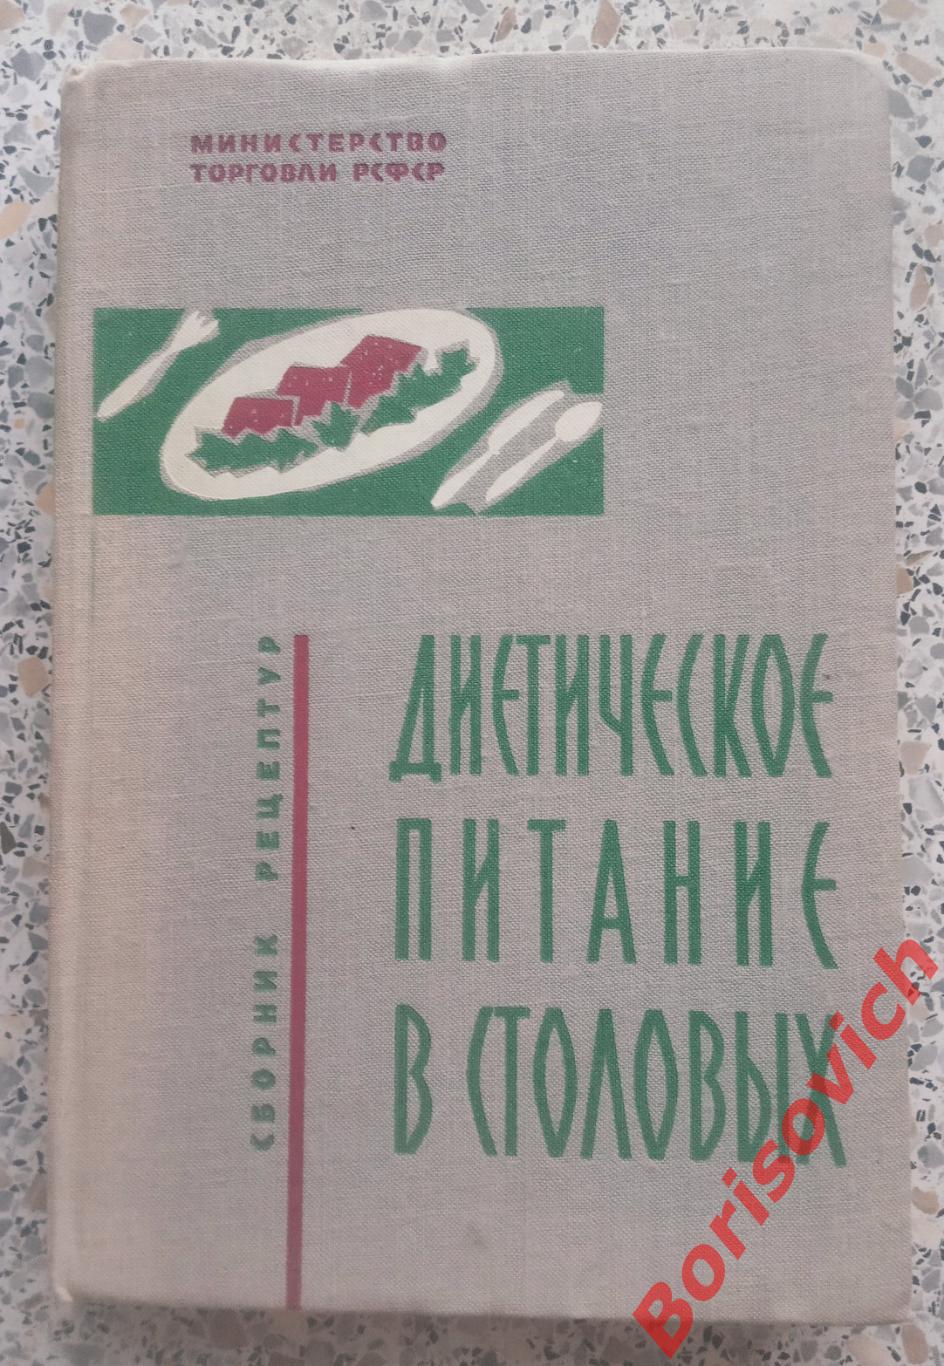 Диетическое питание в столовых Сборник рецептур Москва 1962 г 264 страницы